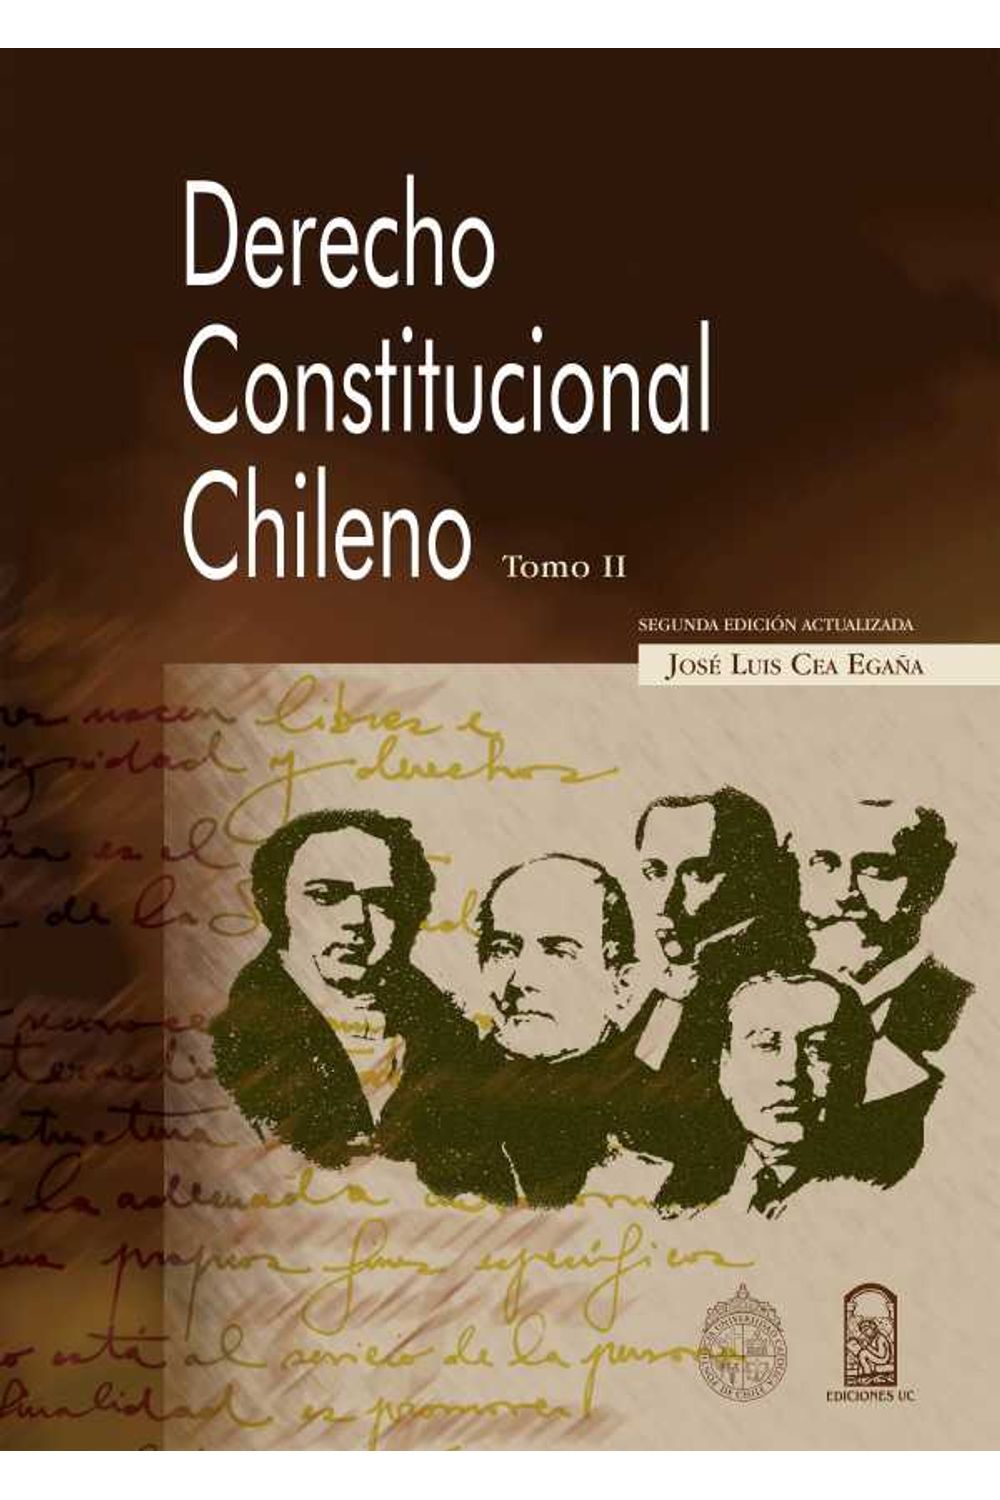 bw-derecho-constitucional-chileno-tomo-ii-ediciones-uc-9789561426955